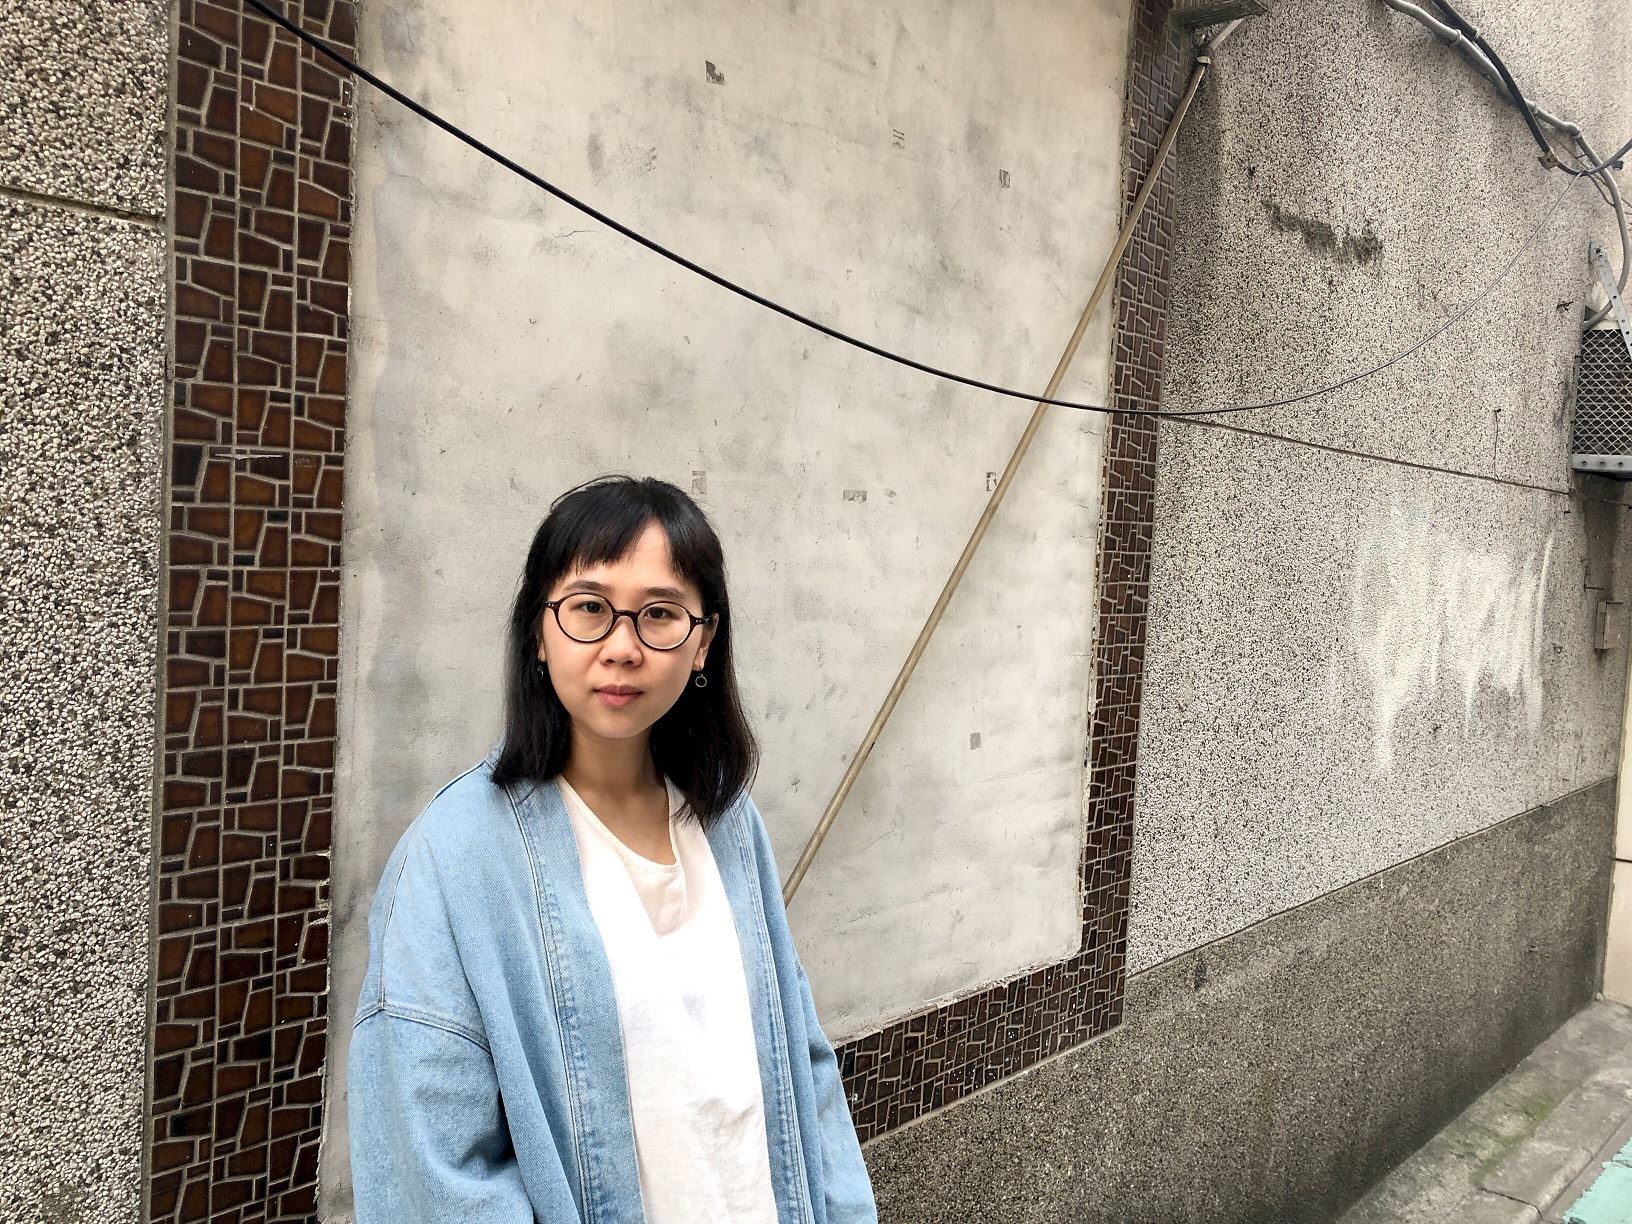 Artist Sera Chen chosen for TAA residency program in New York